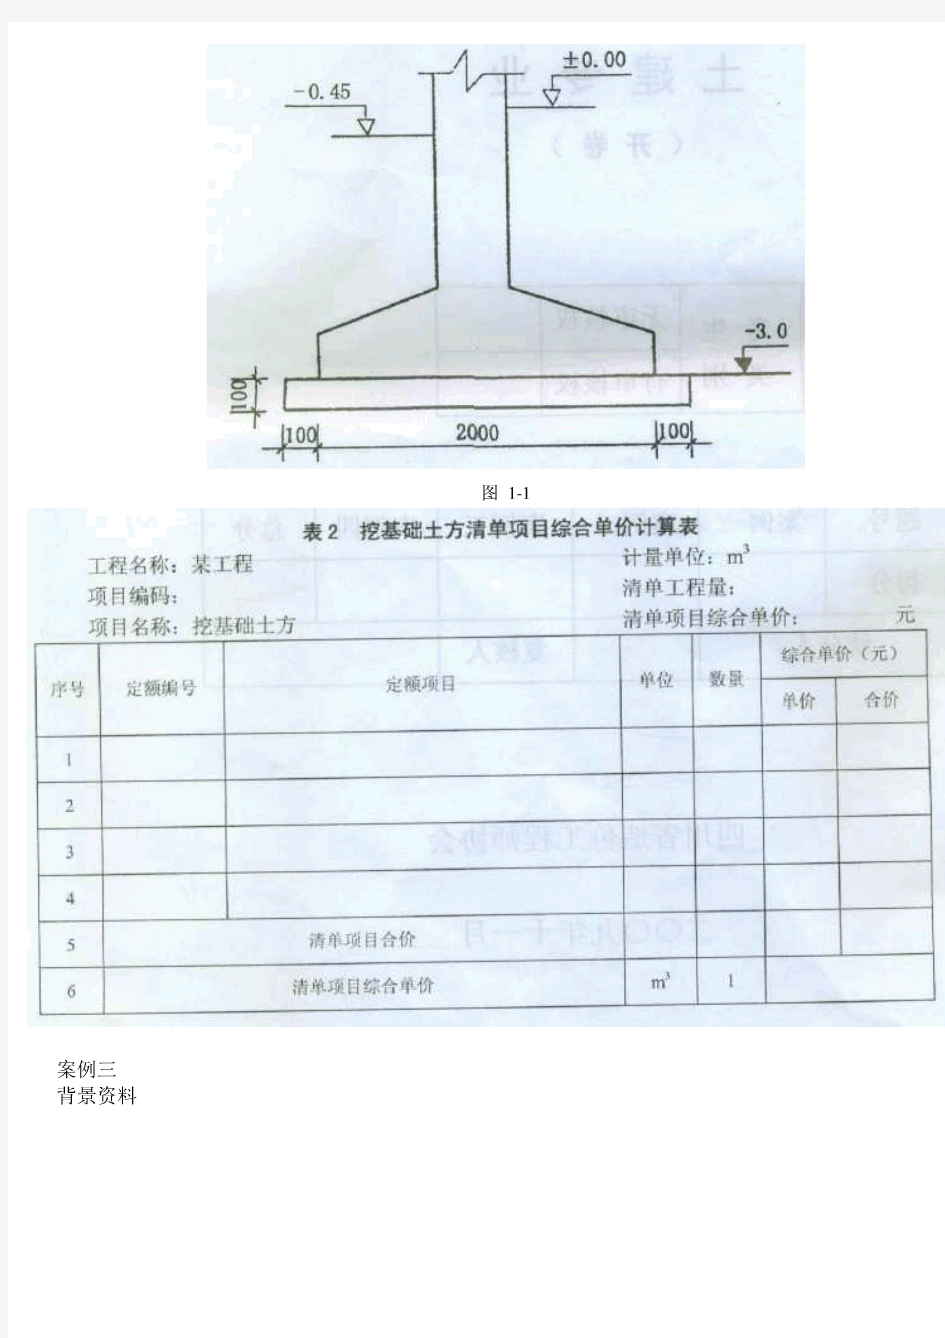 09四川省全国建设工程造价员土建真题开卷考试(试题和答案)